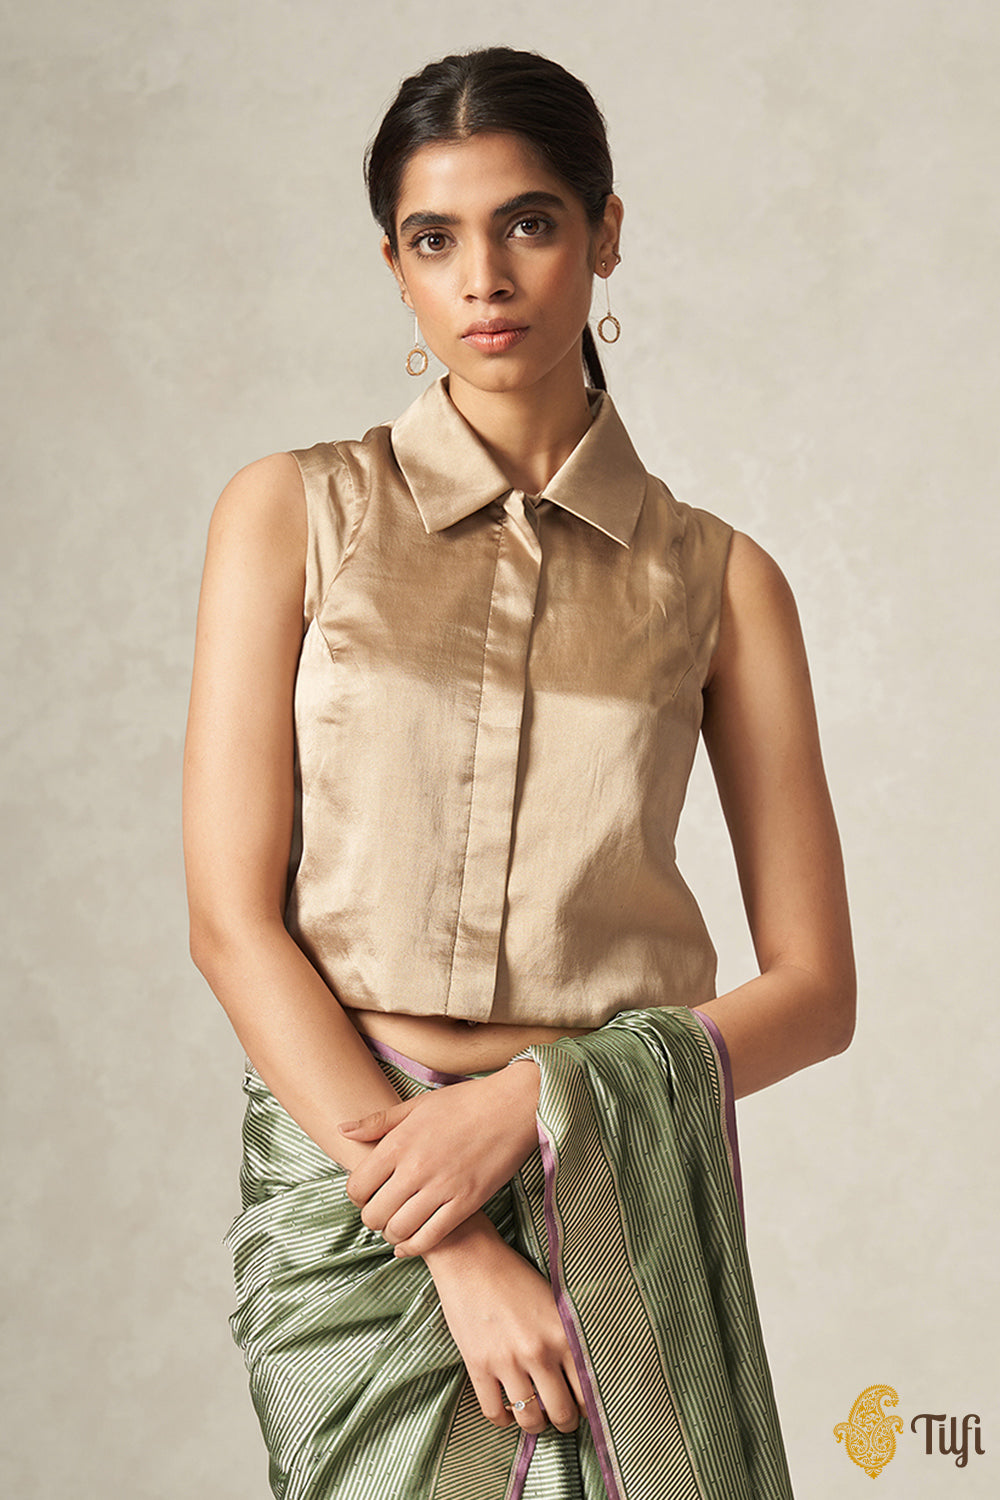 16 Close shirt type blouse ideas | blouse design models, trendy blouse  designs, blouse designs